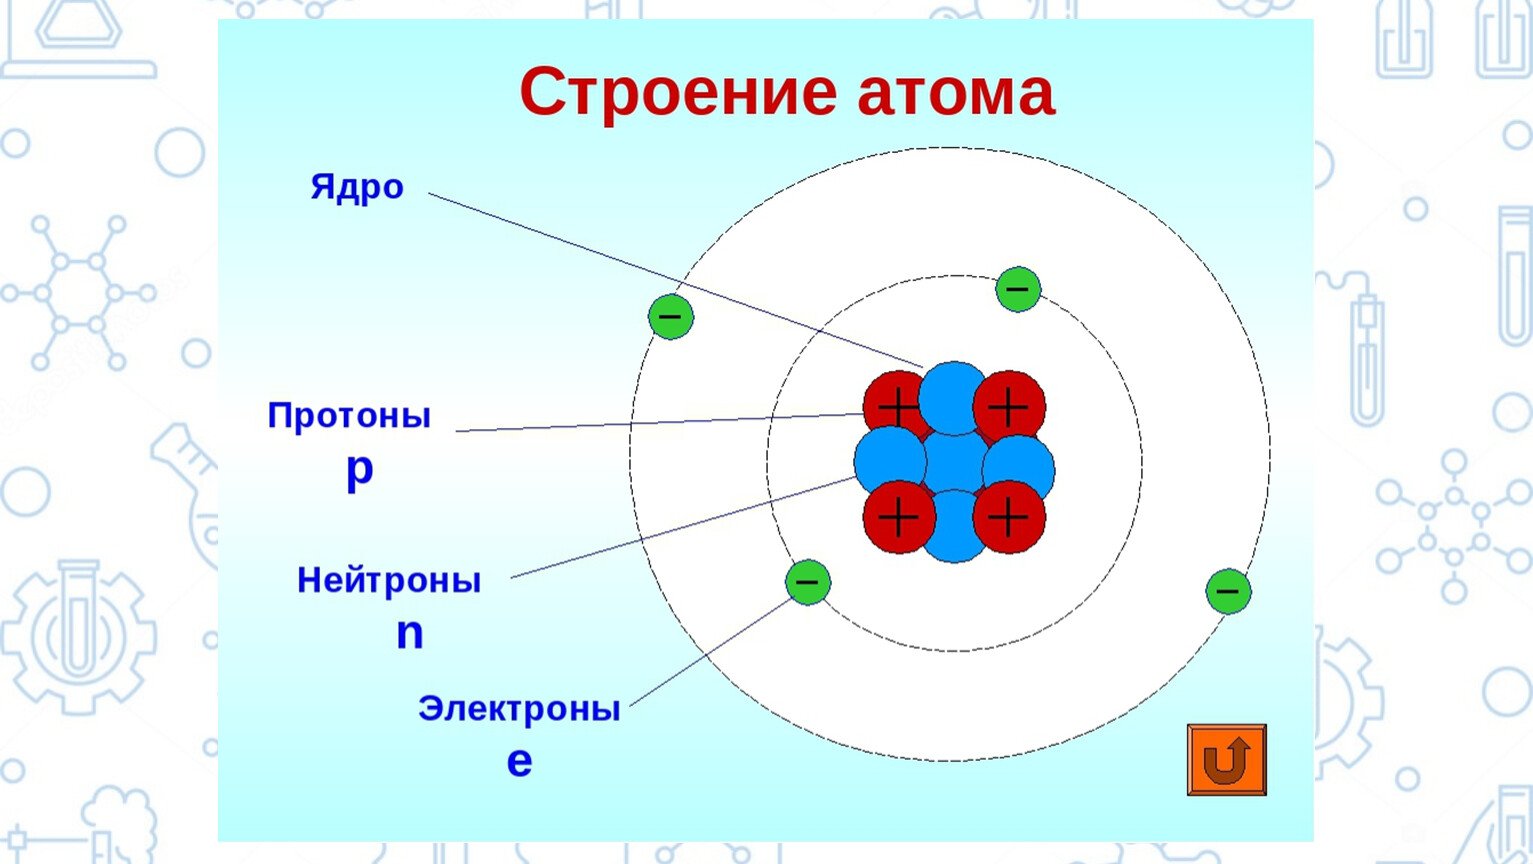 Строение атома серы (s), схема и примеры